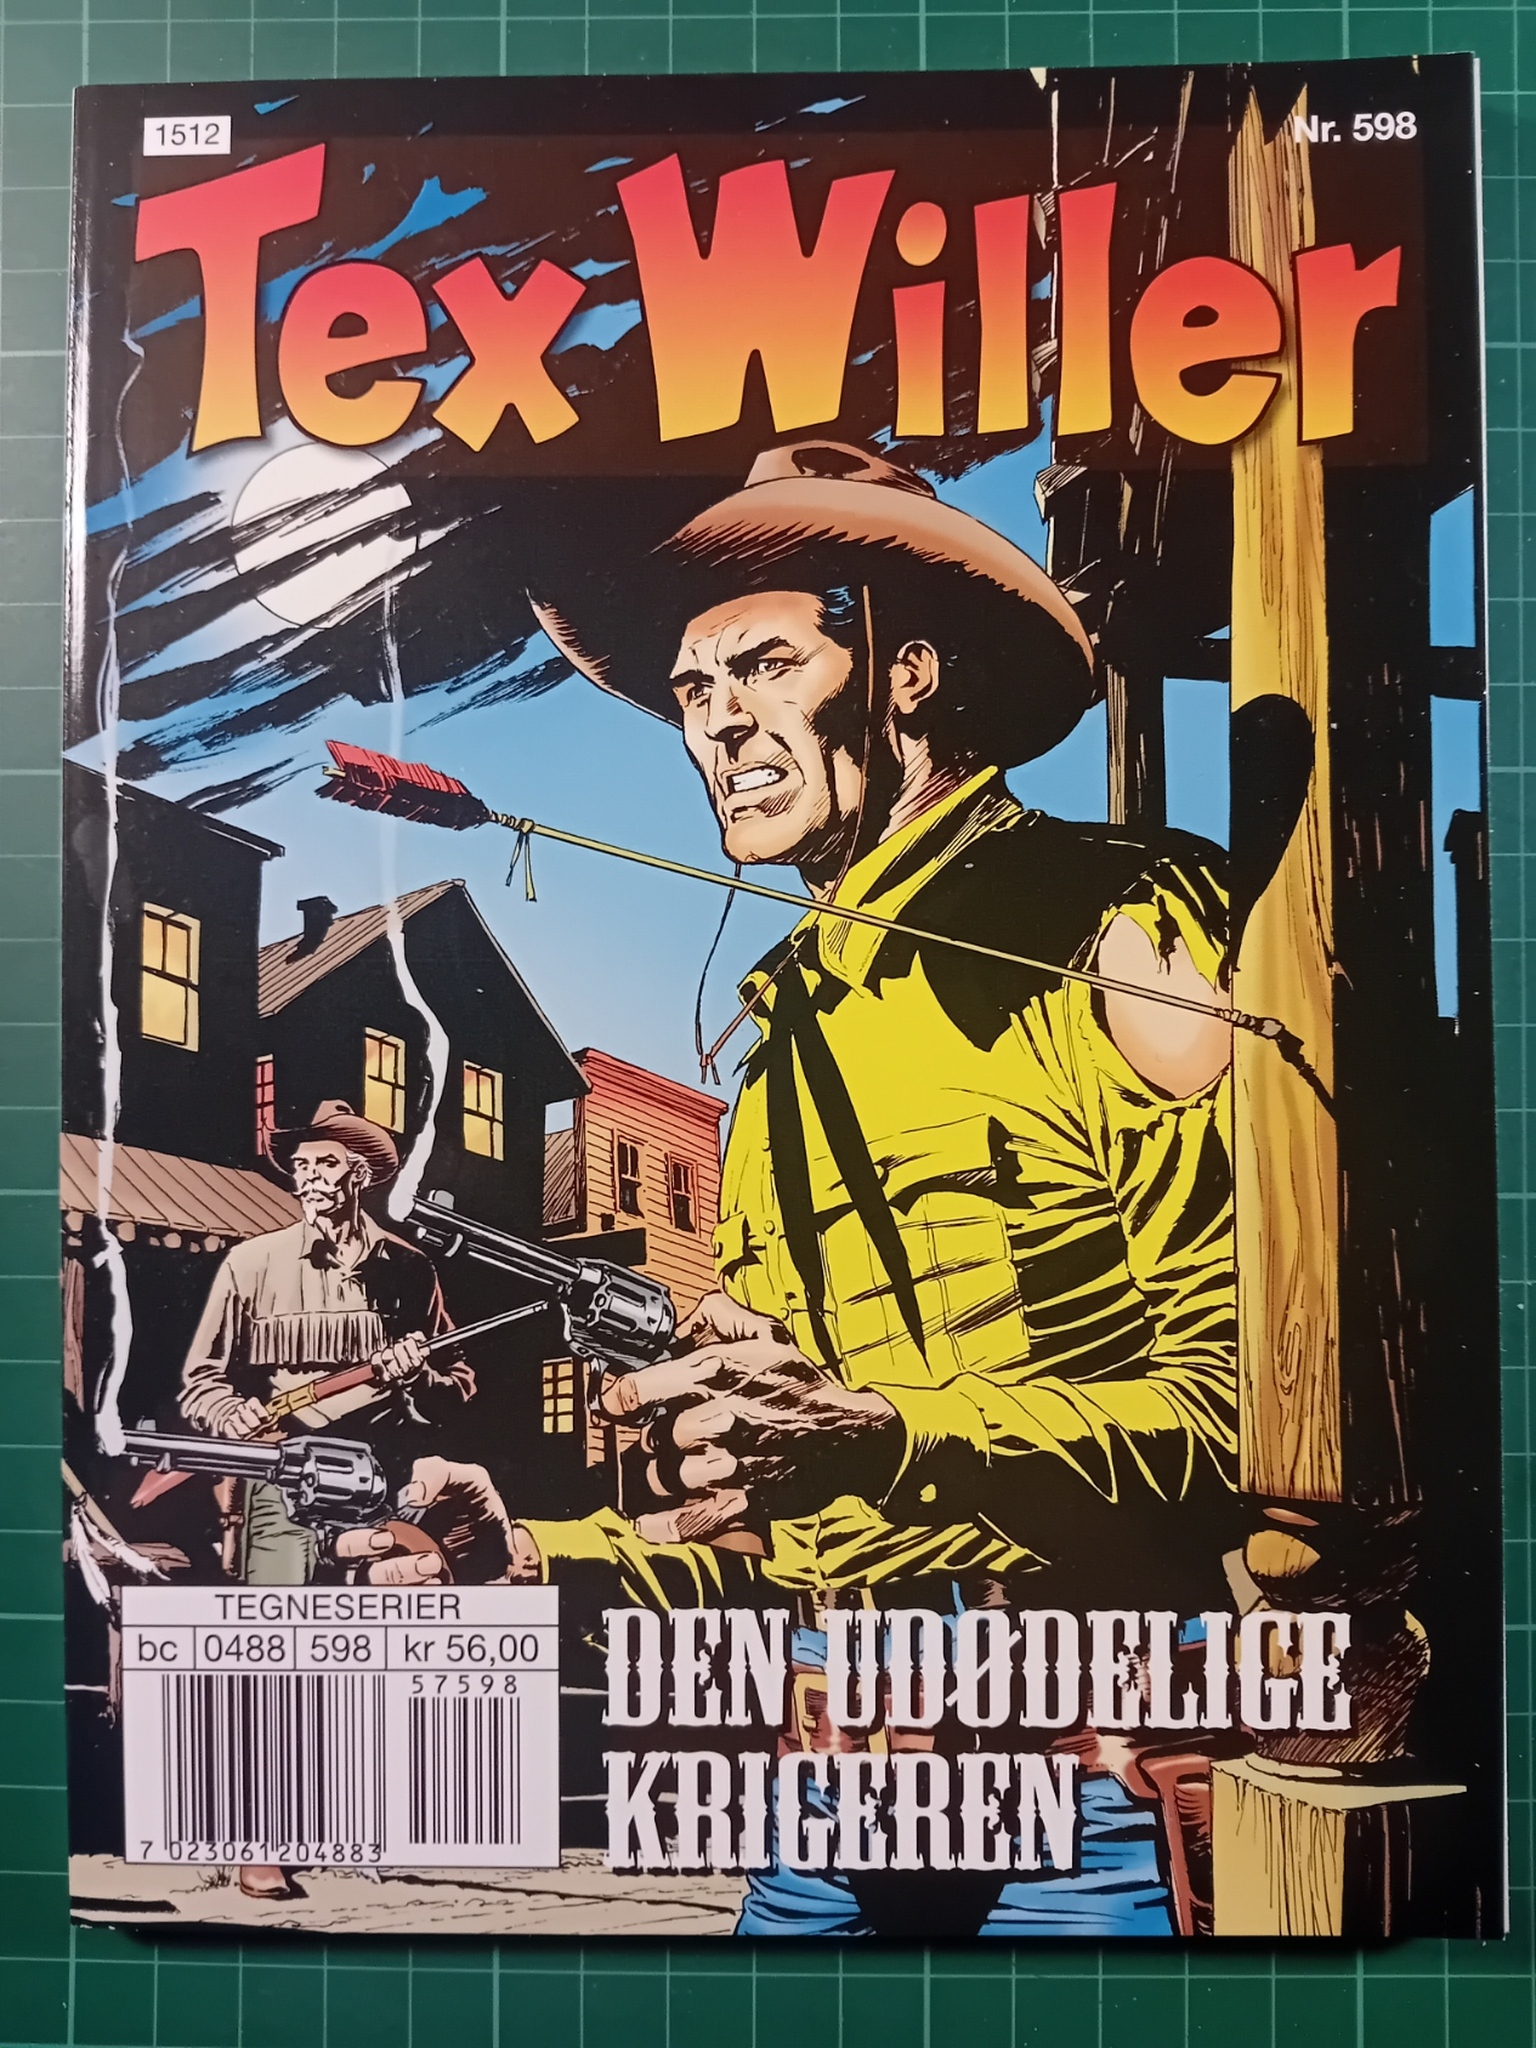 Tex Willer #598